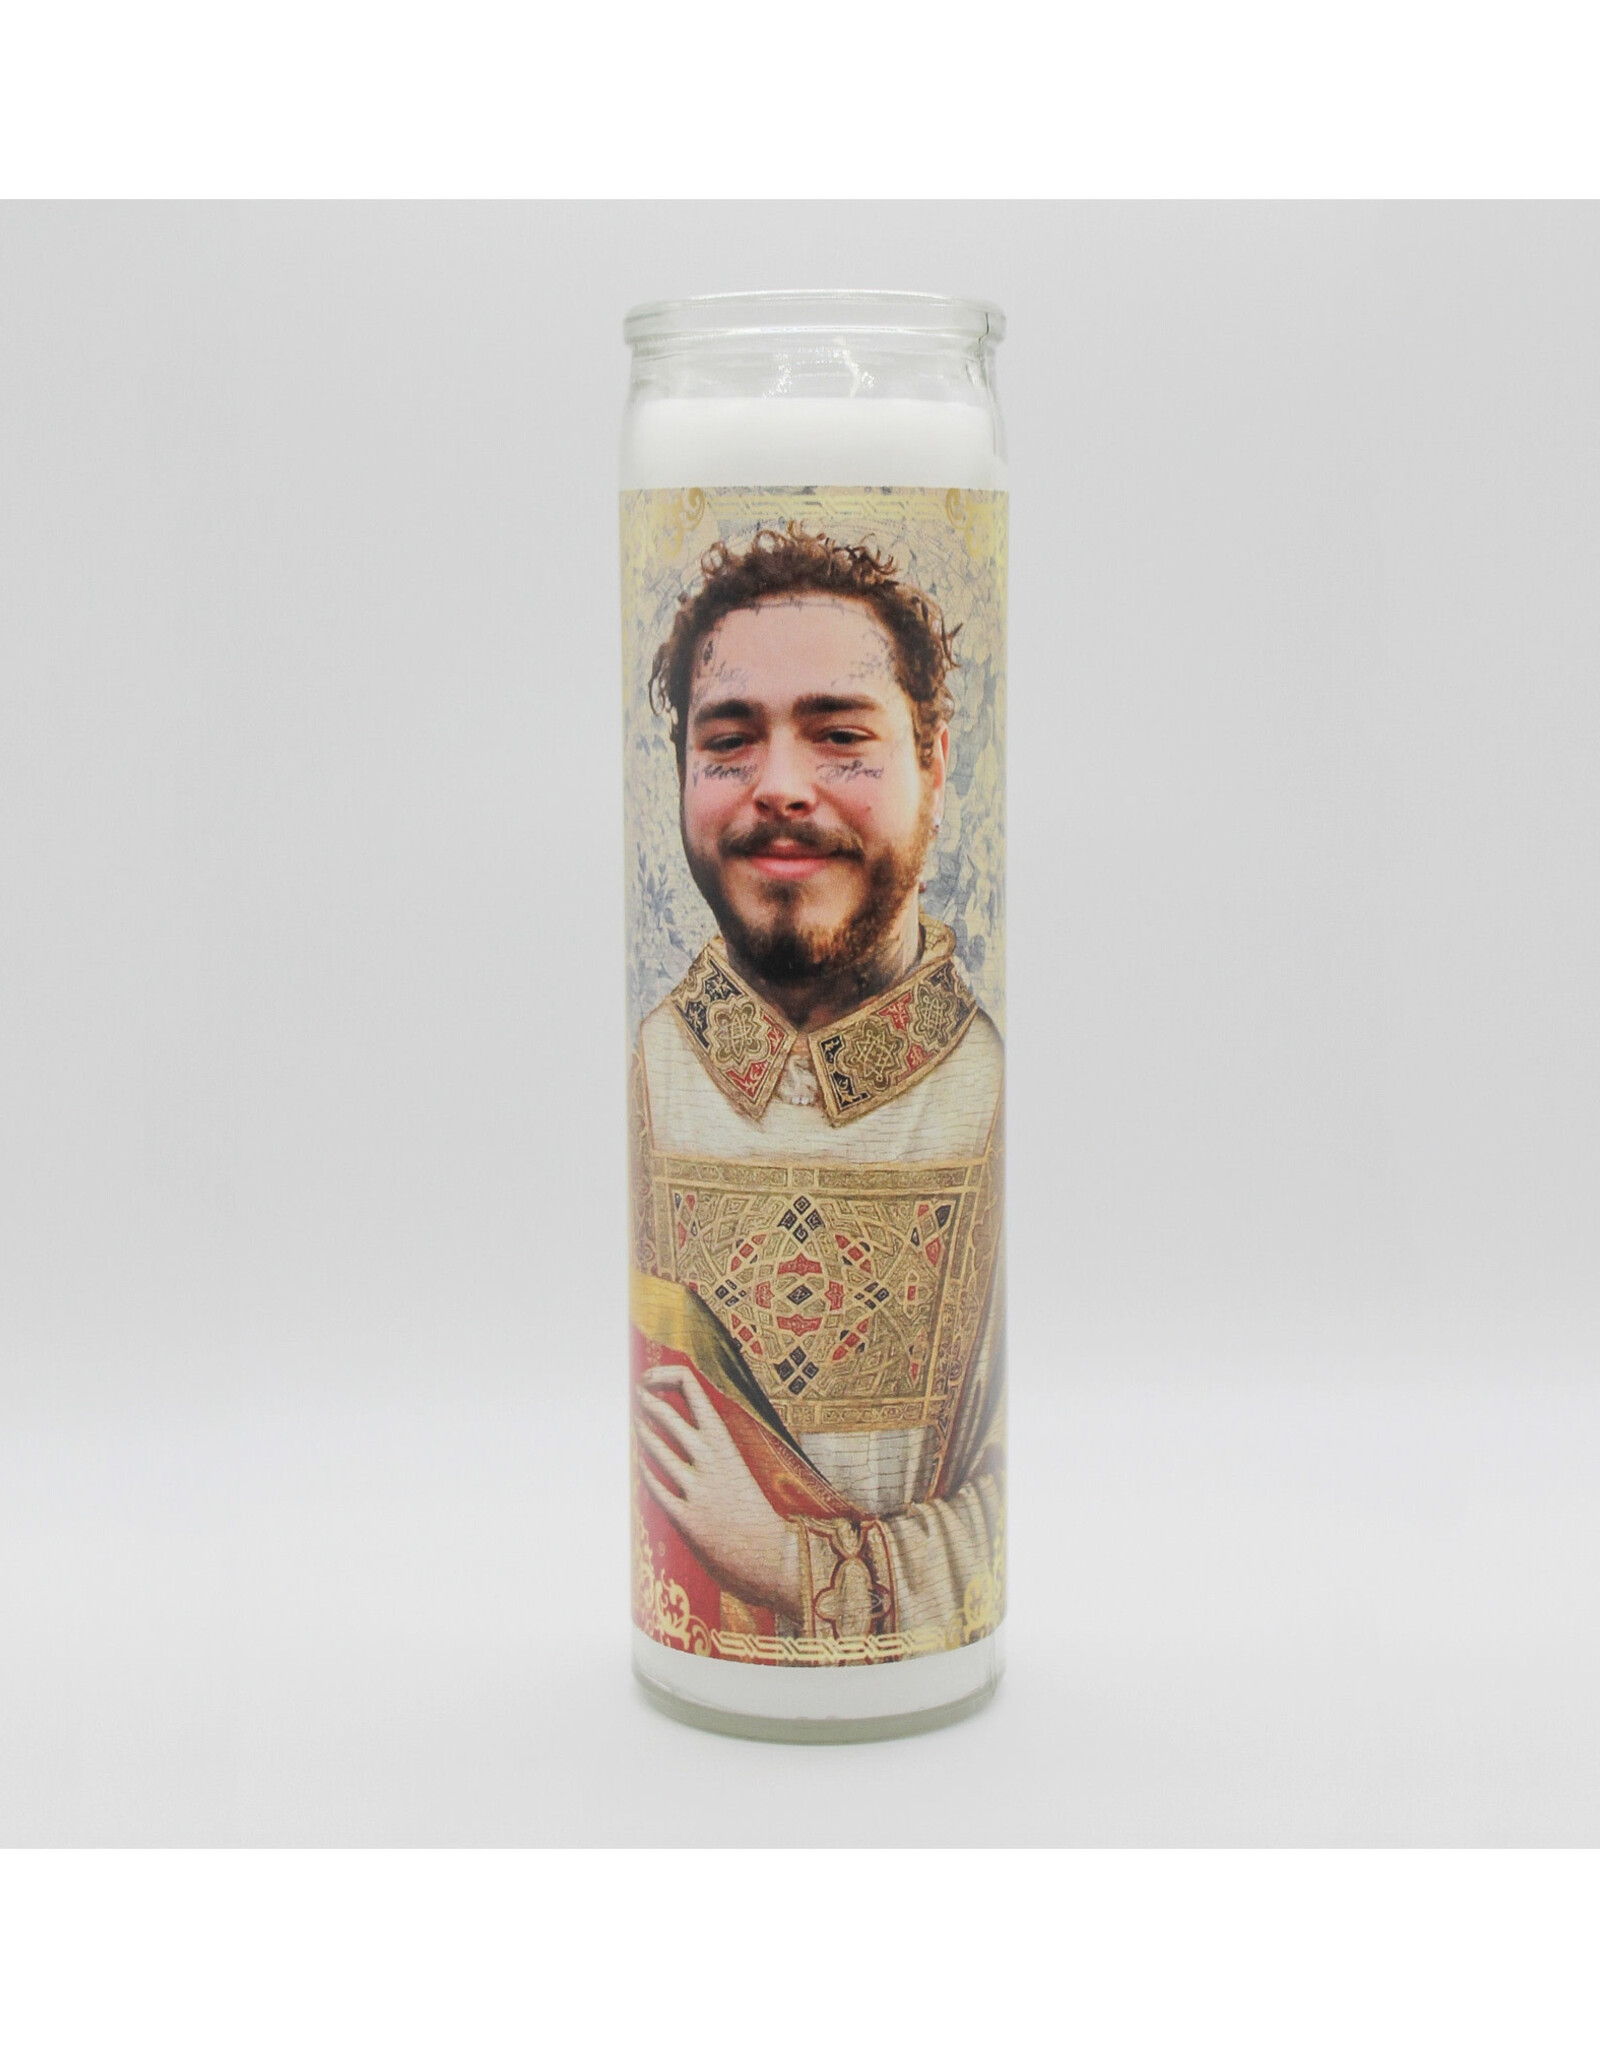 Post Malone Prayer Candle